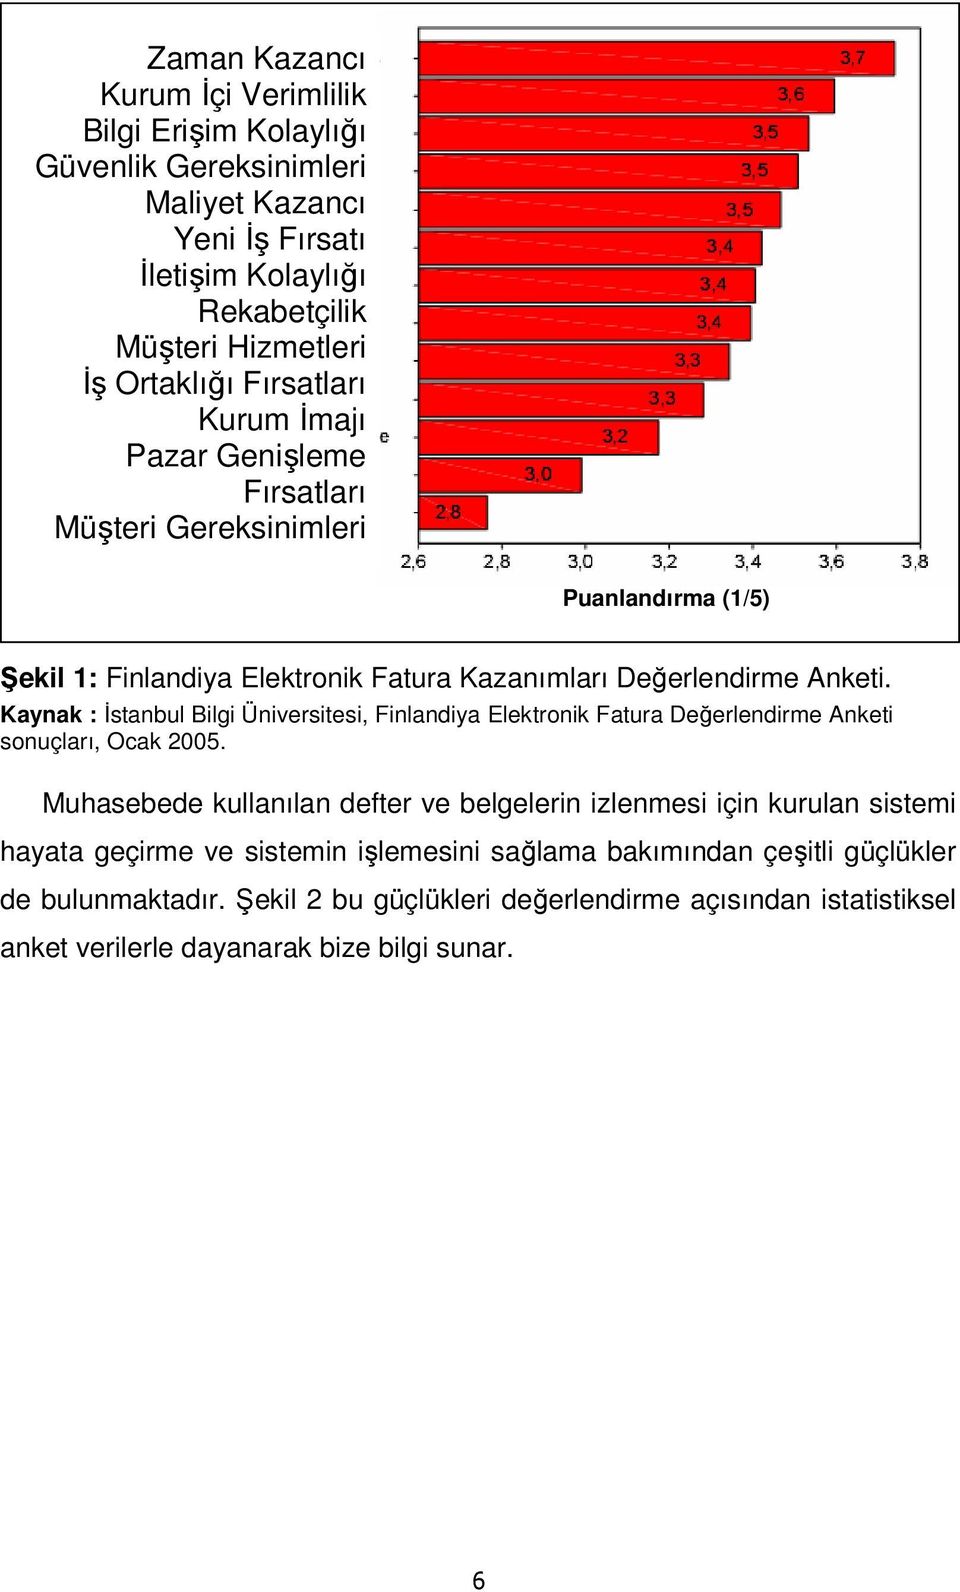 Kaynak : İstanbul Bilgi Üniversitesi, Finlandiya Elektronik Fatura Değerlendirme Anketi sonuçları, Ocak 2005.